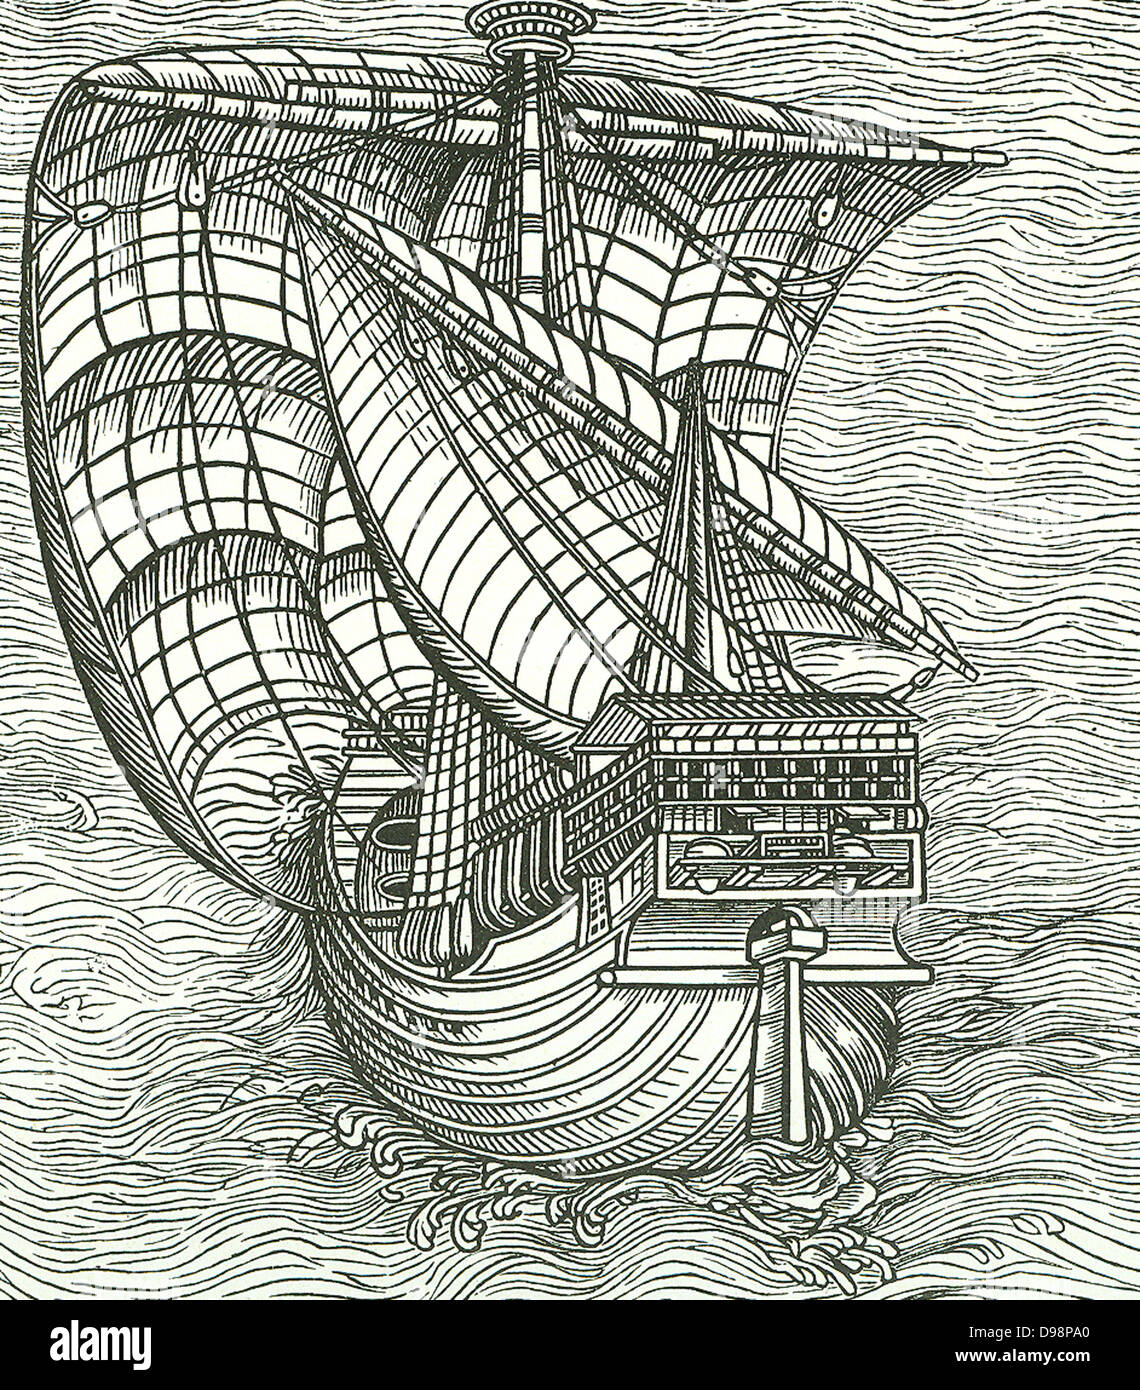 Portugiesische Mann des Krieges. In ähnlichen Schiffen entlang der Küsten, die Portugiesen haben ihren berühmten Voyages erreicht. Um 1270 der Kompass, Box und Nadel kombiniert, begann mehr frei von Mariners verwendet werden und stark profitiert die genaue Seekarten. Stockfoto